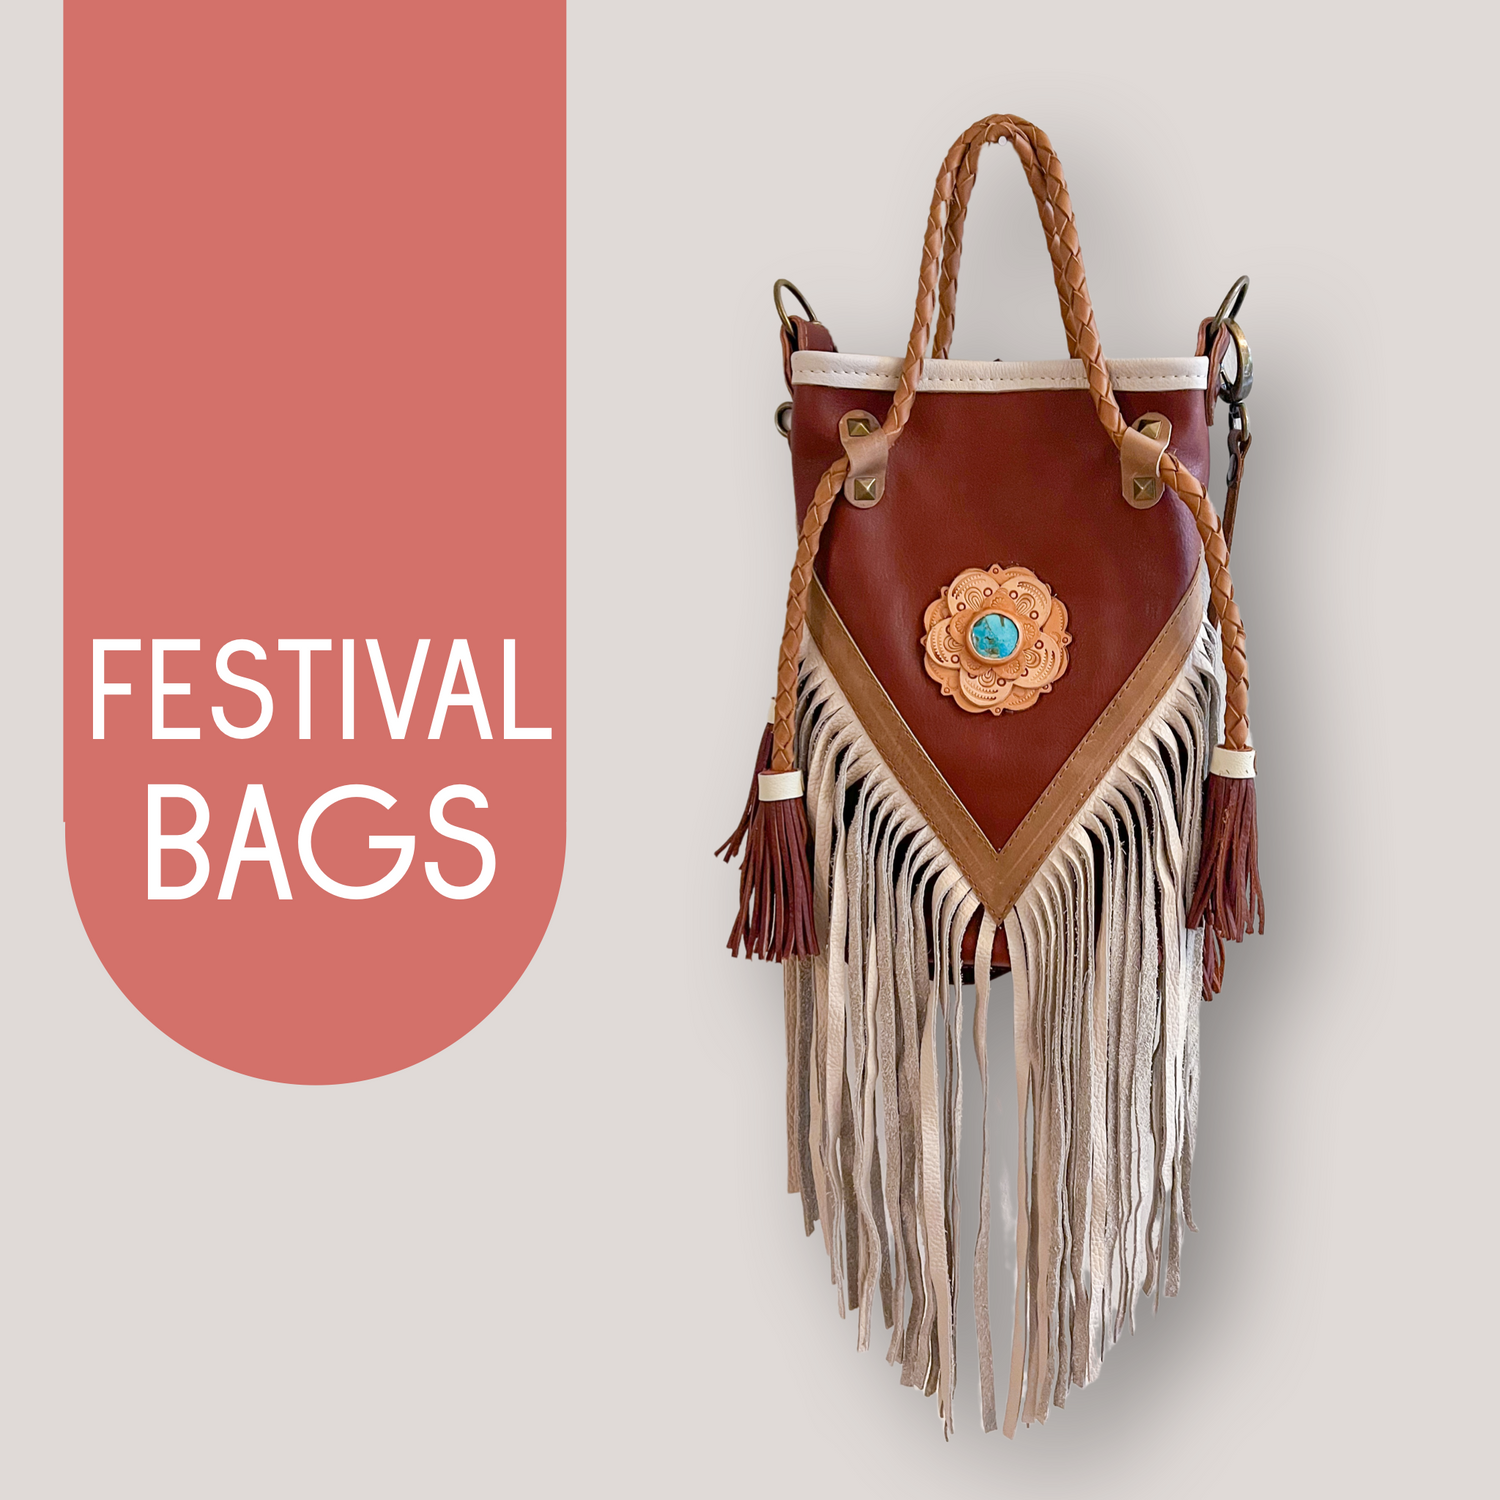 Festival Bags